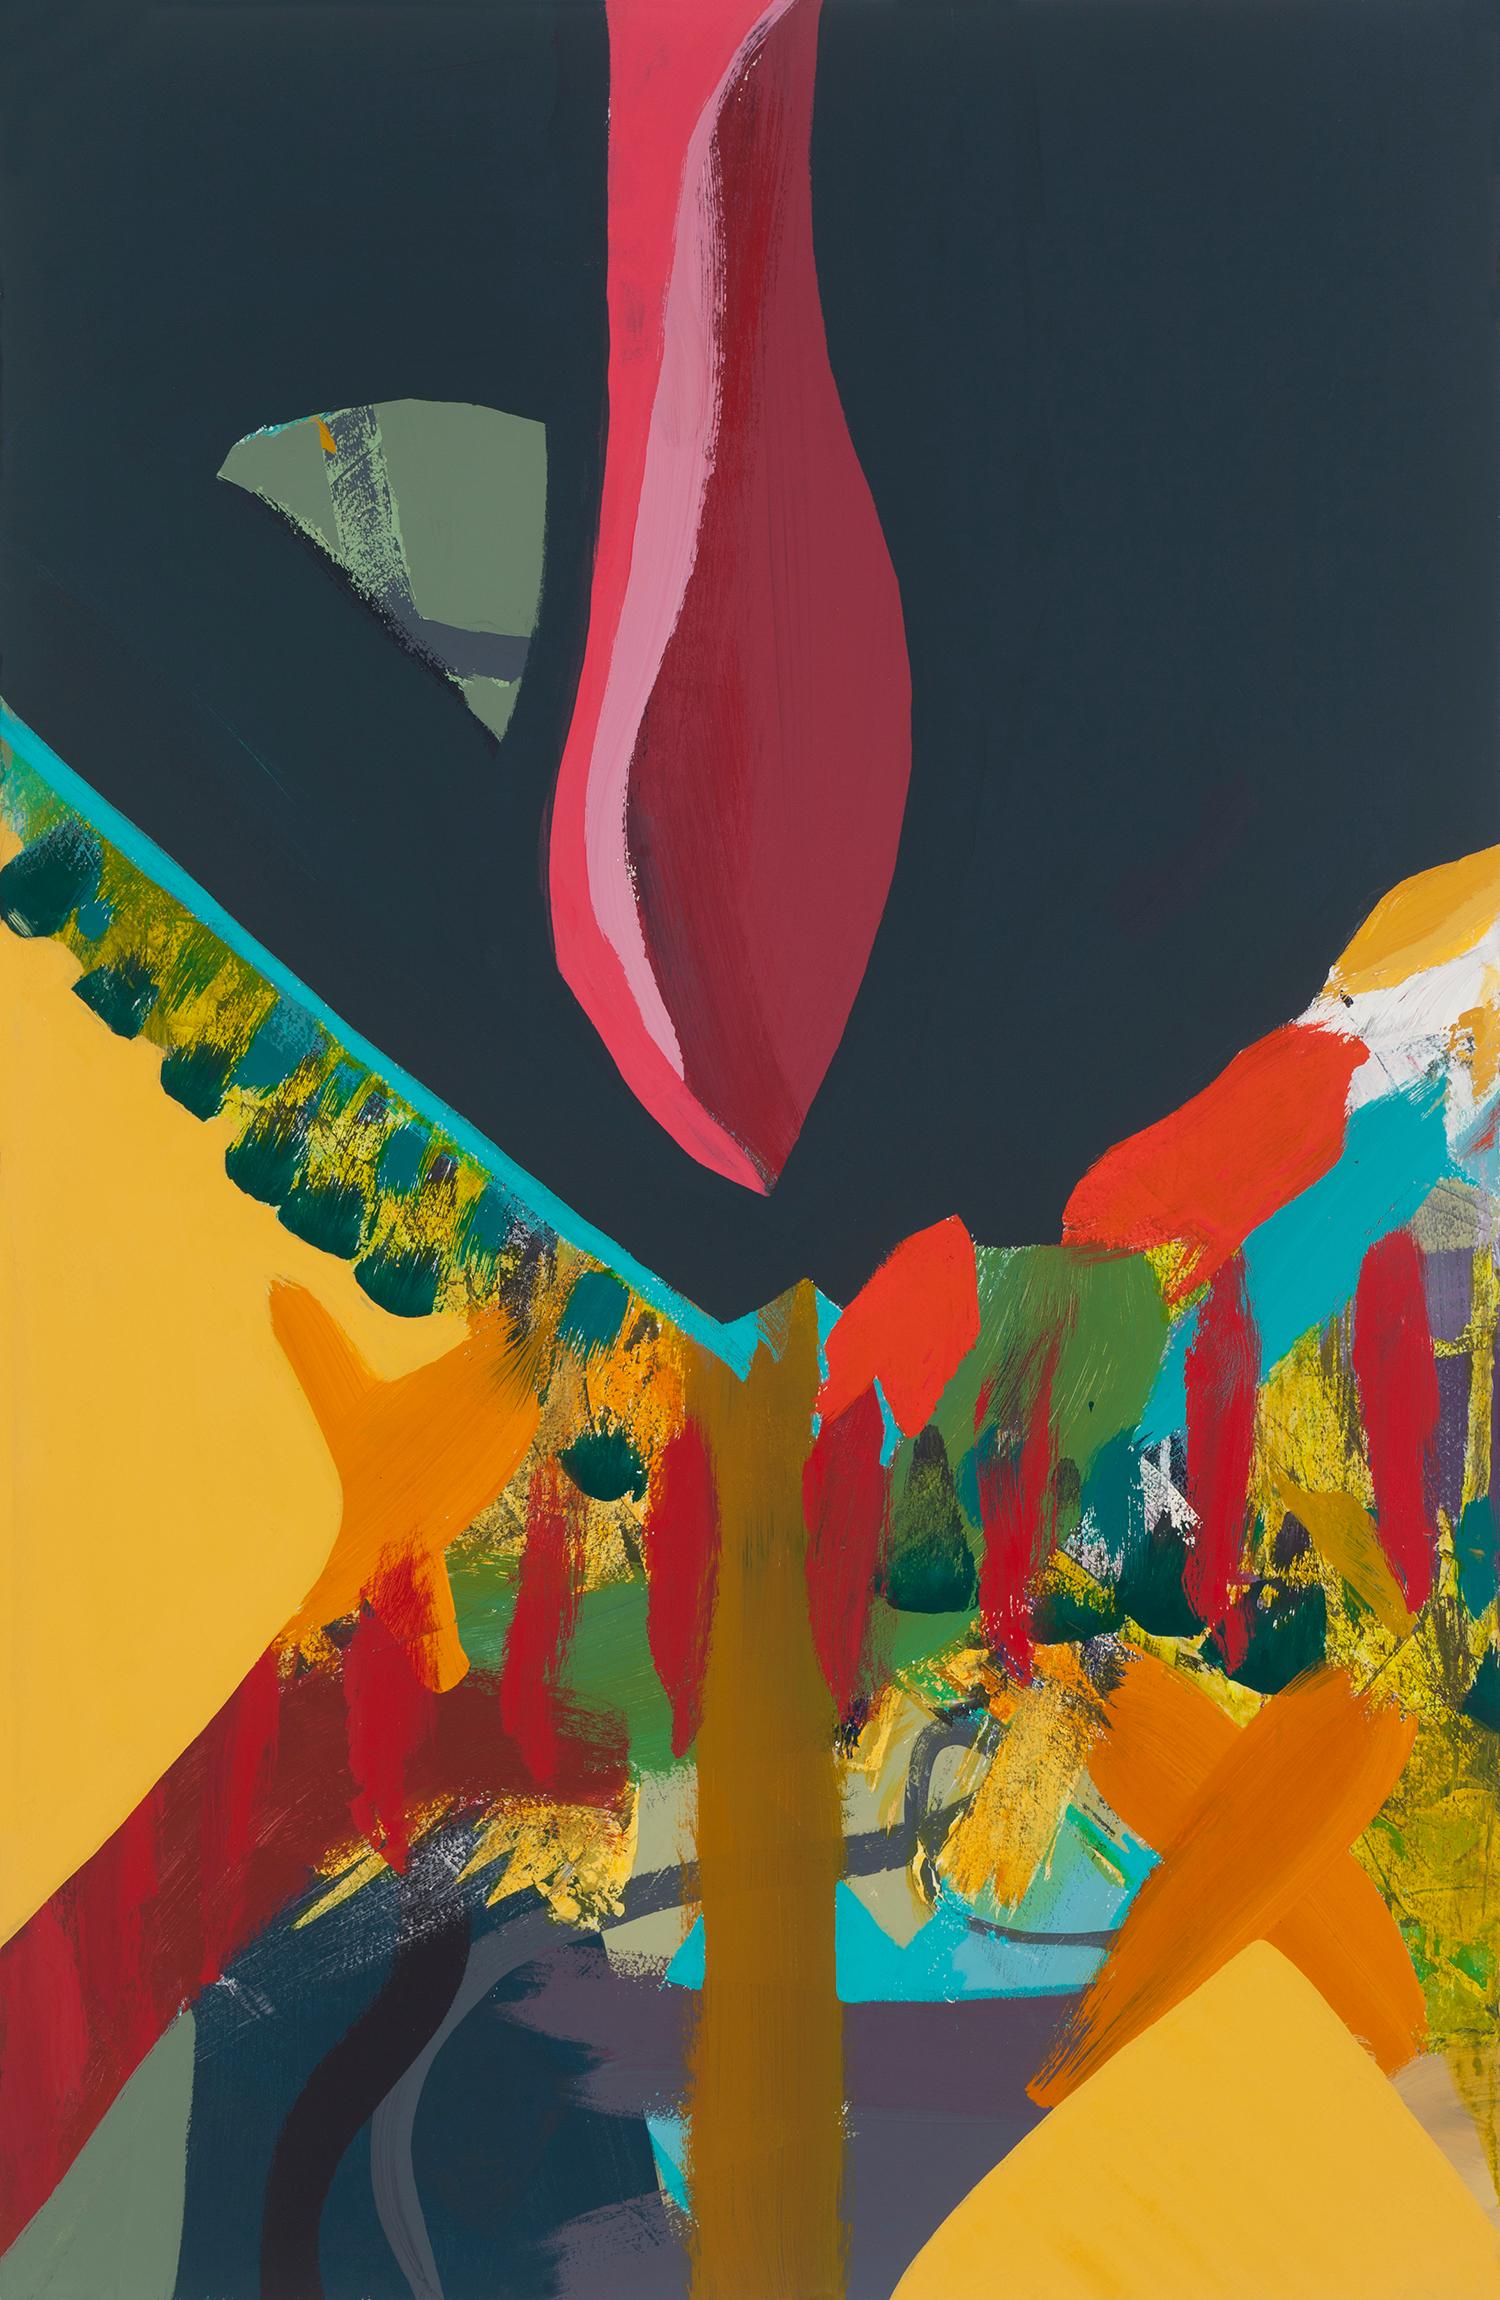 Abstract Painting Melissa Shaak - "Pirouette", contemporain, abstrait, audacieux, rouge, rose, gris, peinture acrylique.